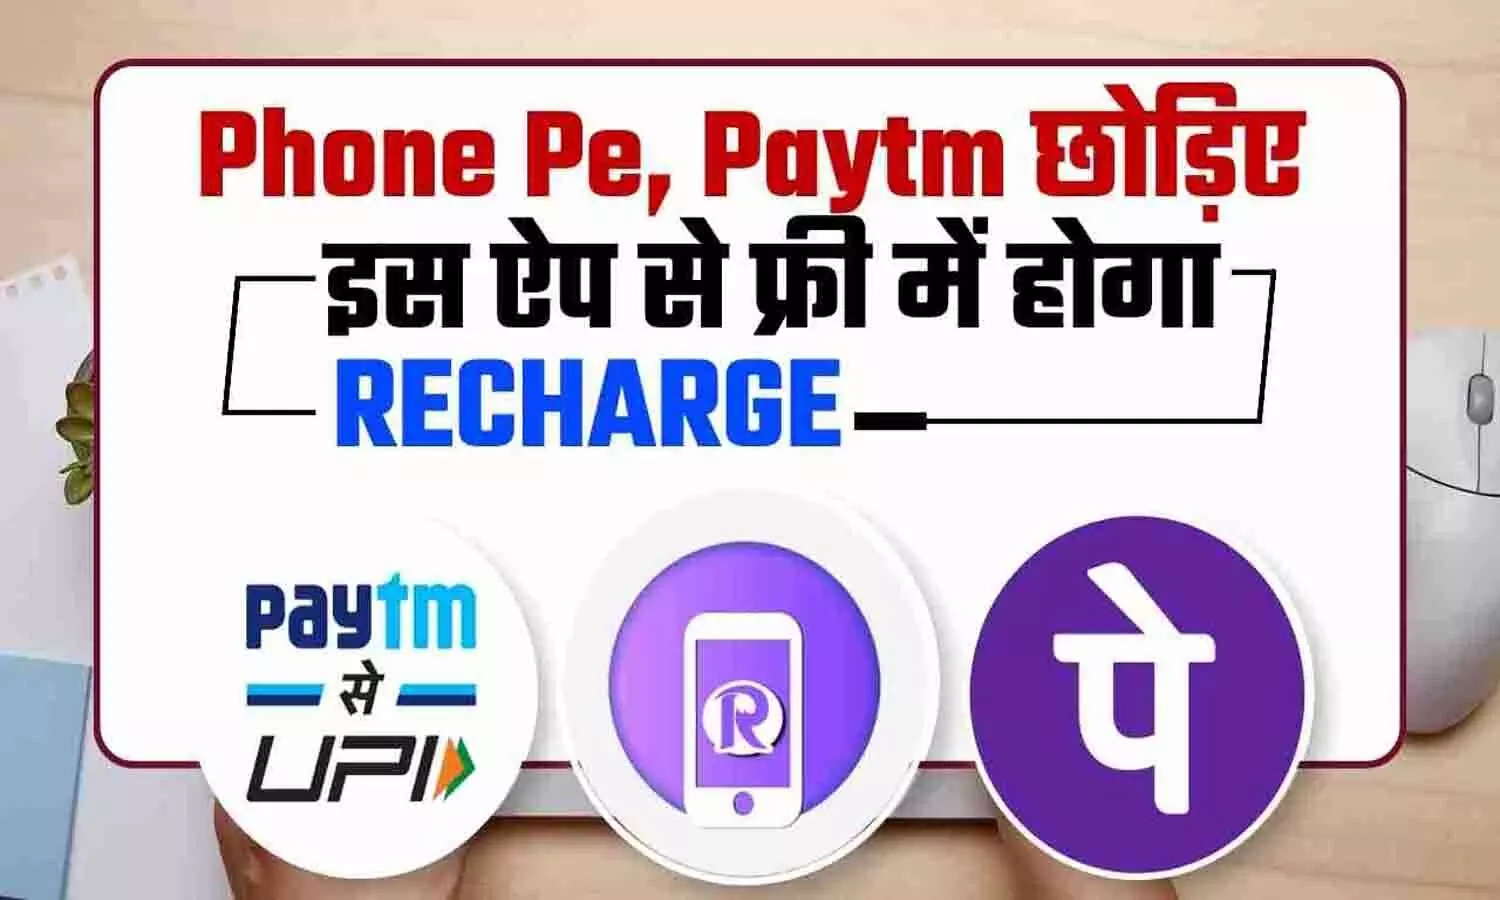 Free Mobile Recharge Website: Phone Pe, Paytm और Google Pay छोड़िए! इस ऐप से फ्री में होगा रिचार्ज, जानिए आसान तरीका?